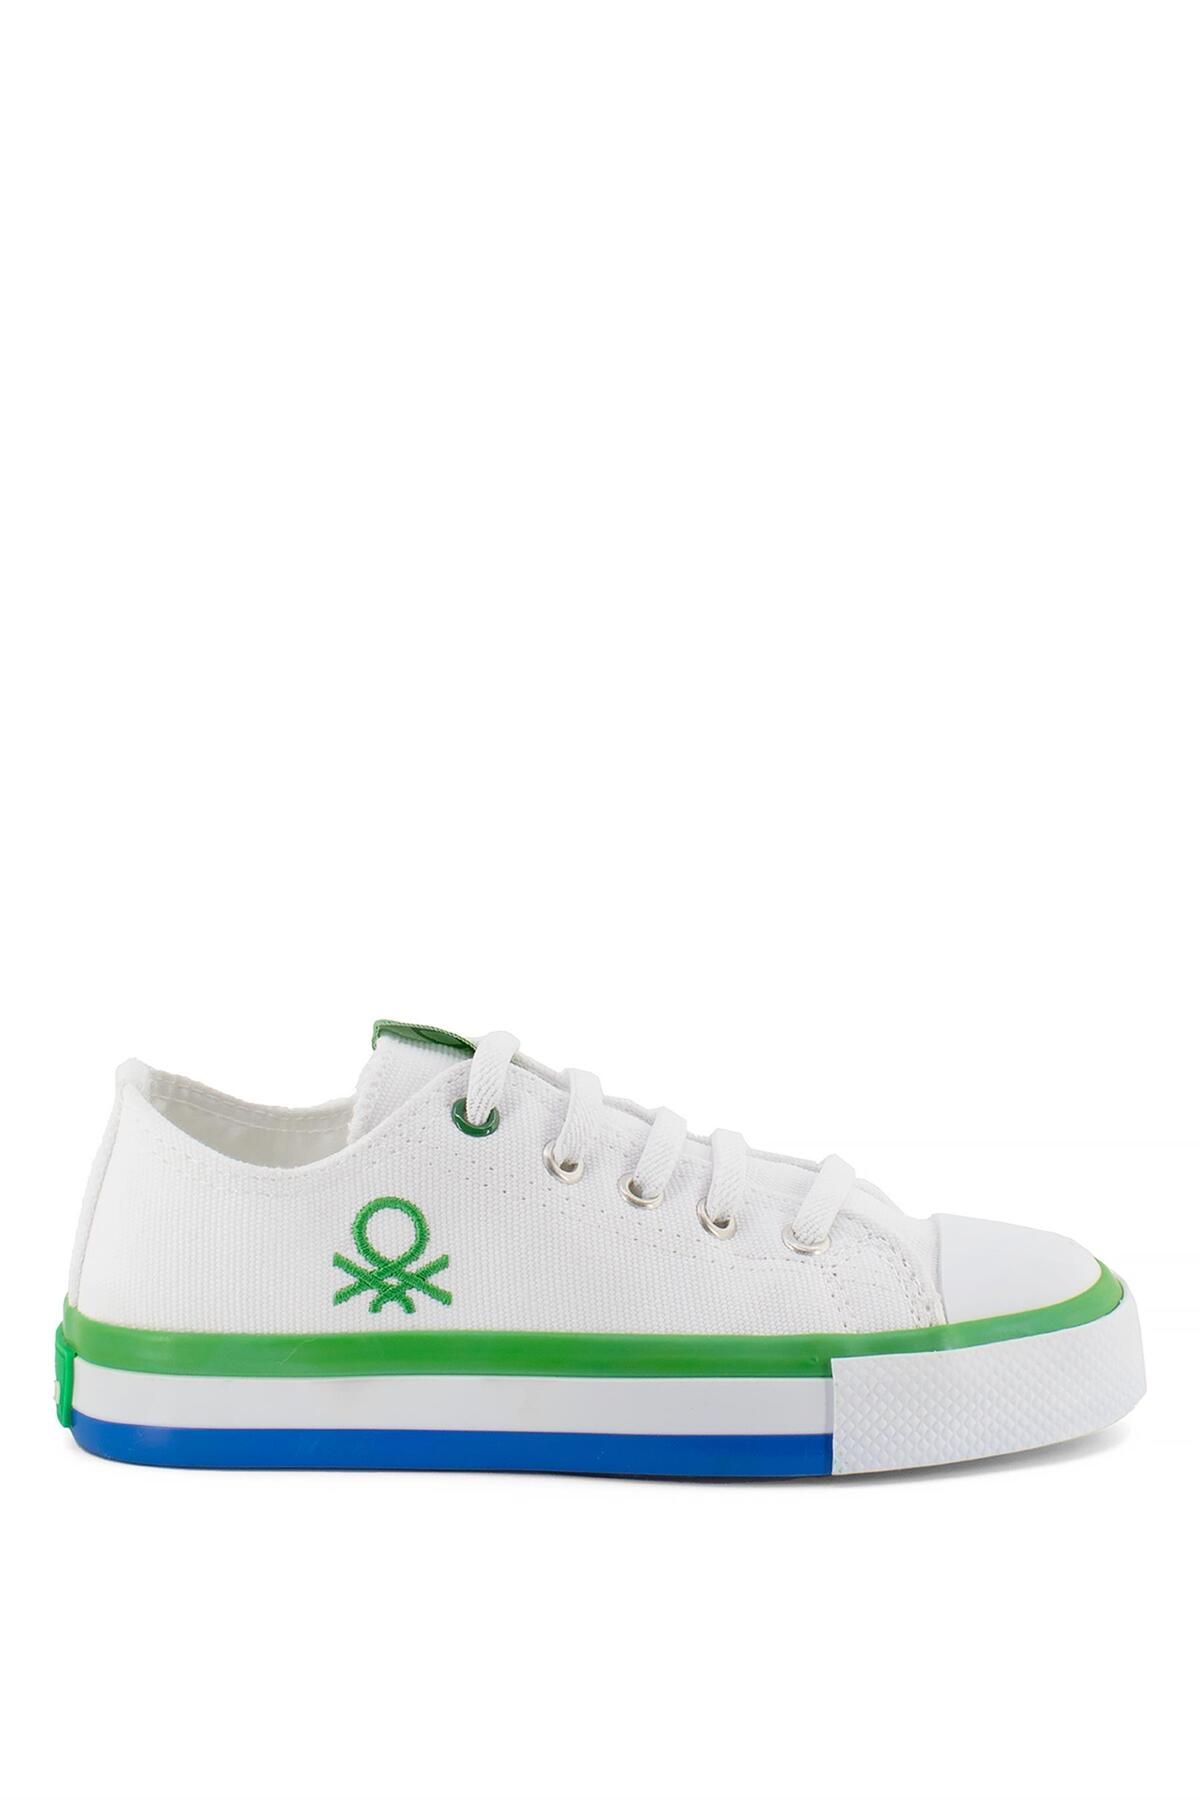 Benetton BN-30175 Filet Kız Çocuk Spor Ayakkabı Beyaz - Yeşil